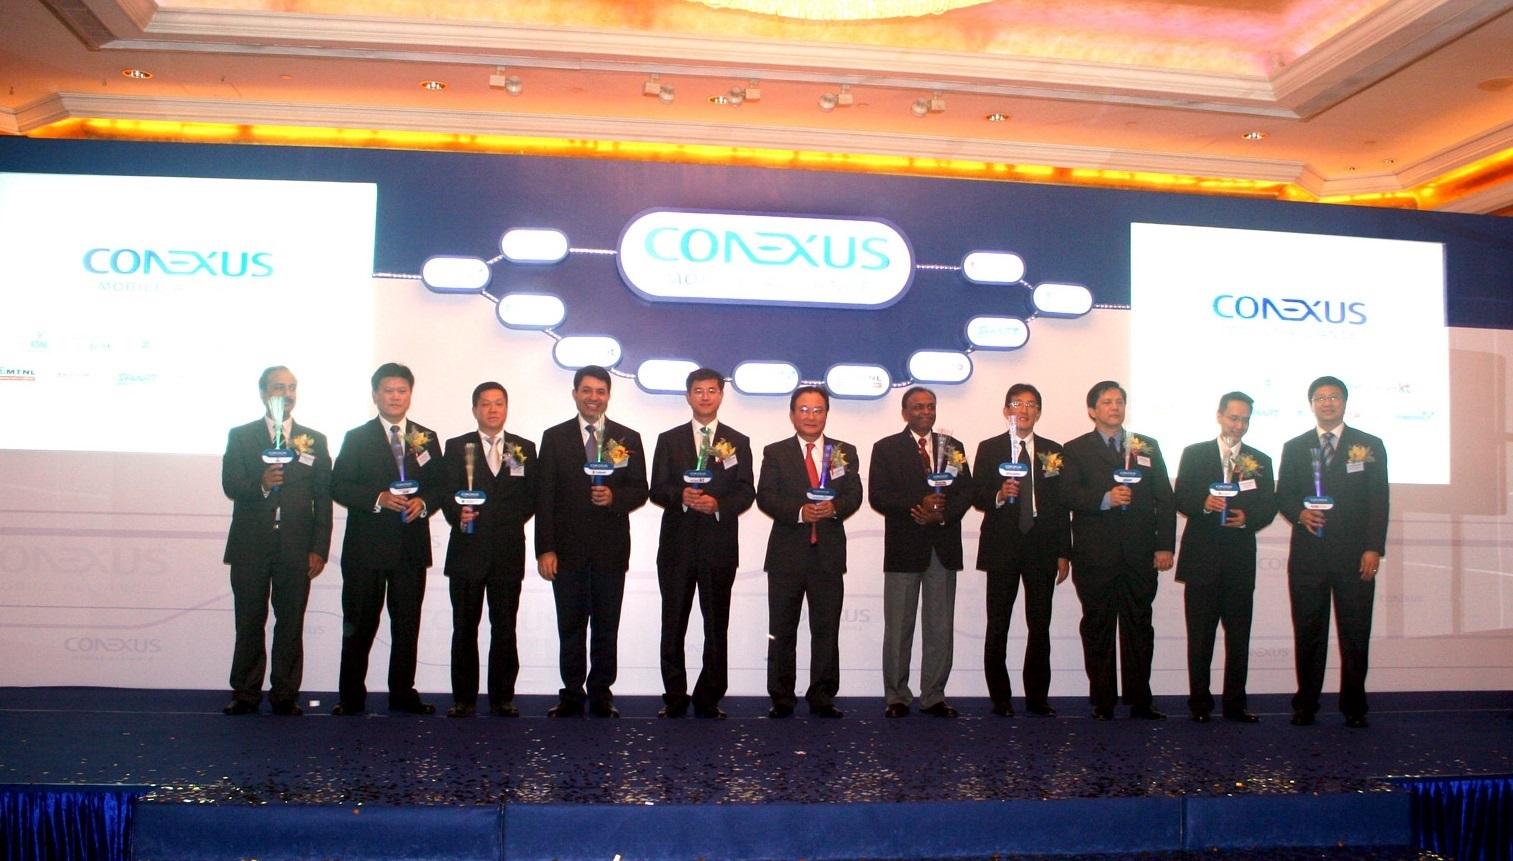 Ông Lâm Hoàng Vinh - Phó Tổng Giám đốc VNPT kiêm Giám đốc VinaPhone (đứng giữa) tại sự kiện VinaPhone tham gia liên minh Conexus ngày 17/11/2009.